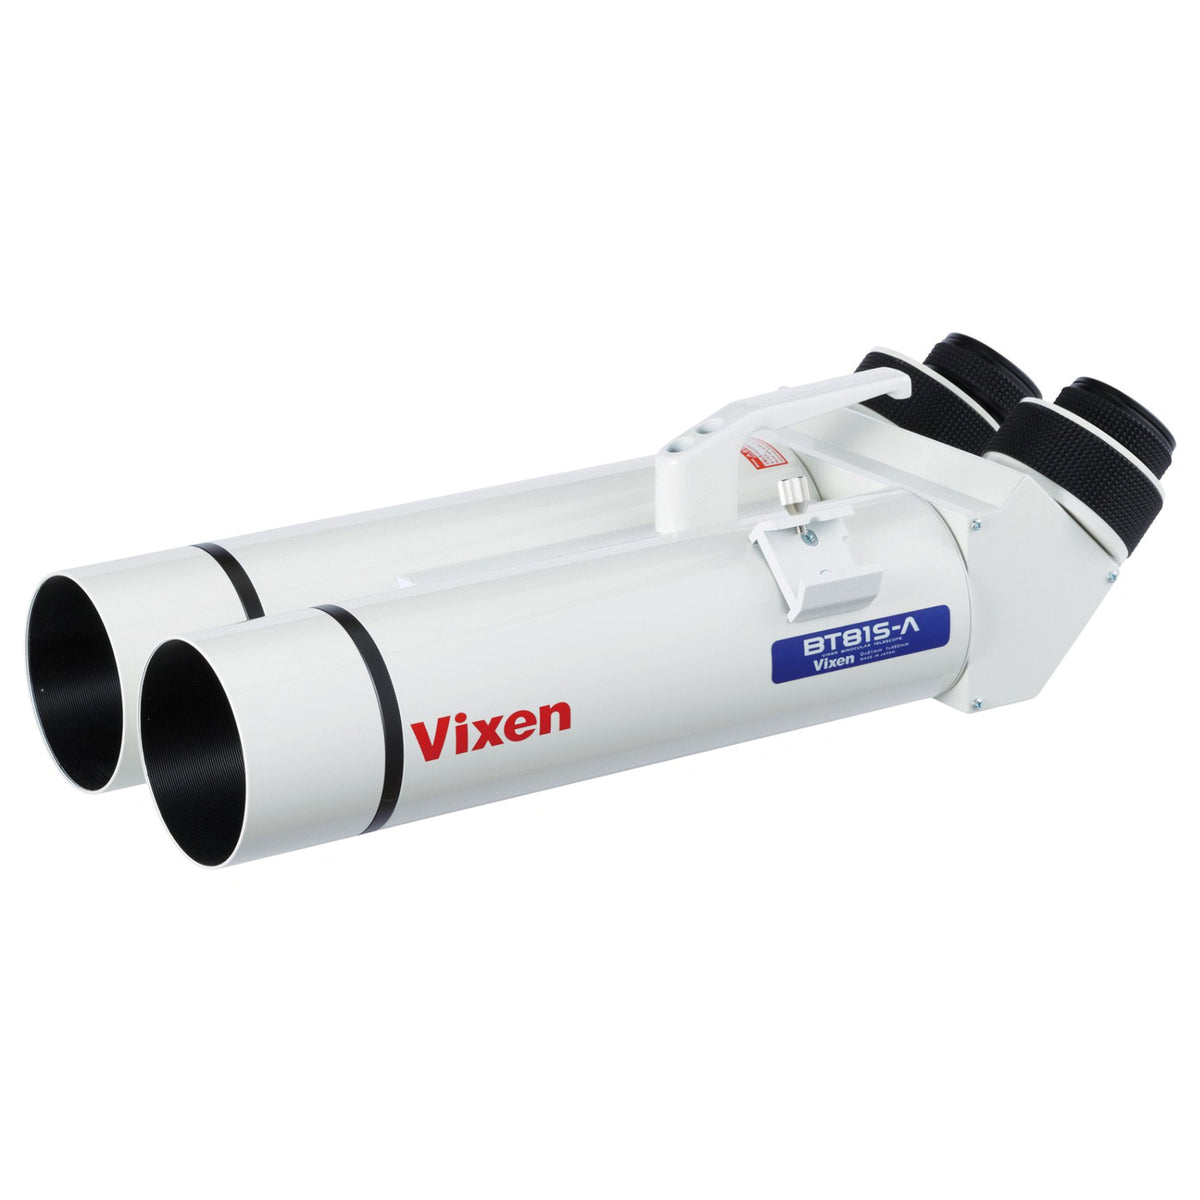 Vixen Astronomy Binoculars BT-81S-A — Explore Scientific